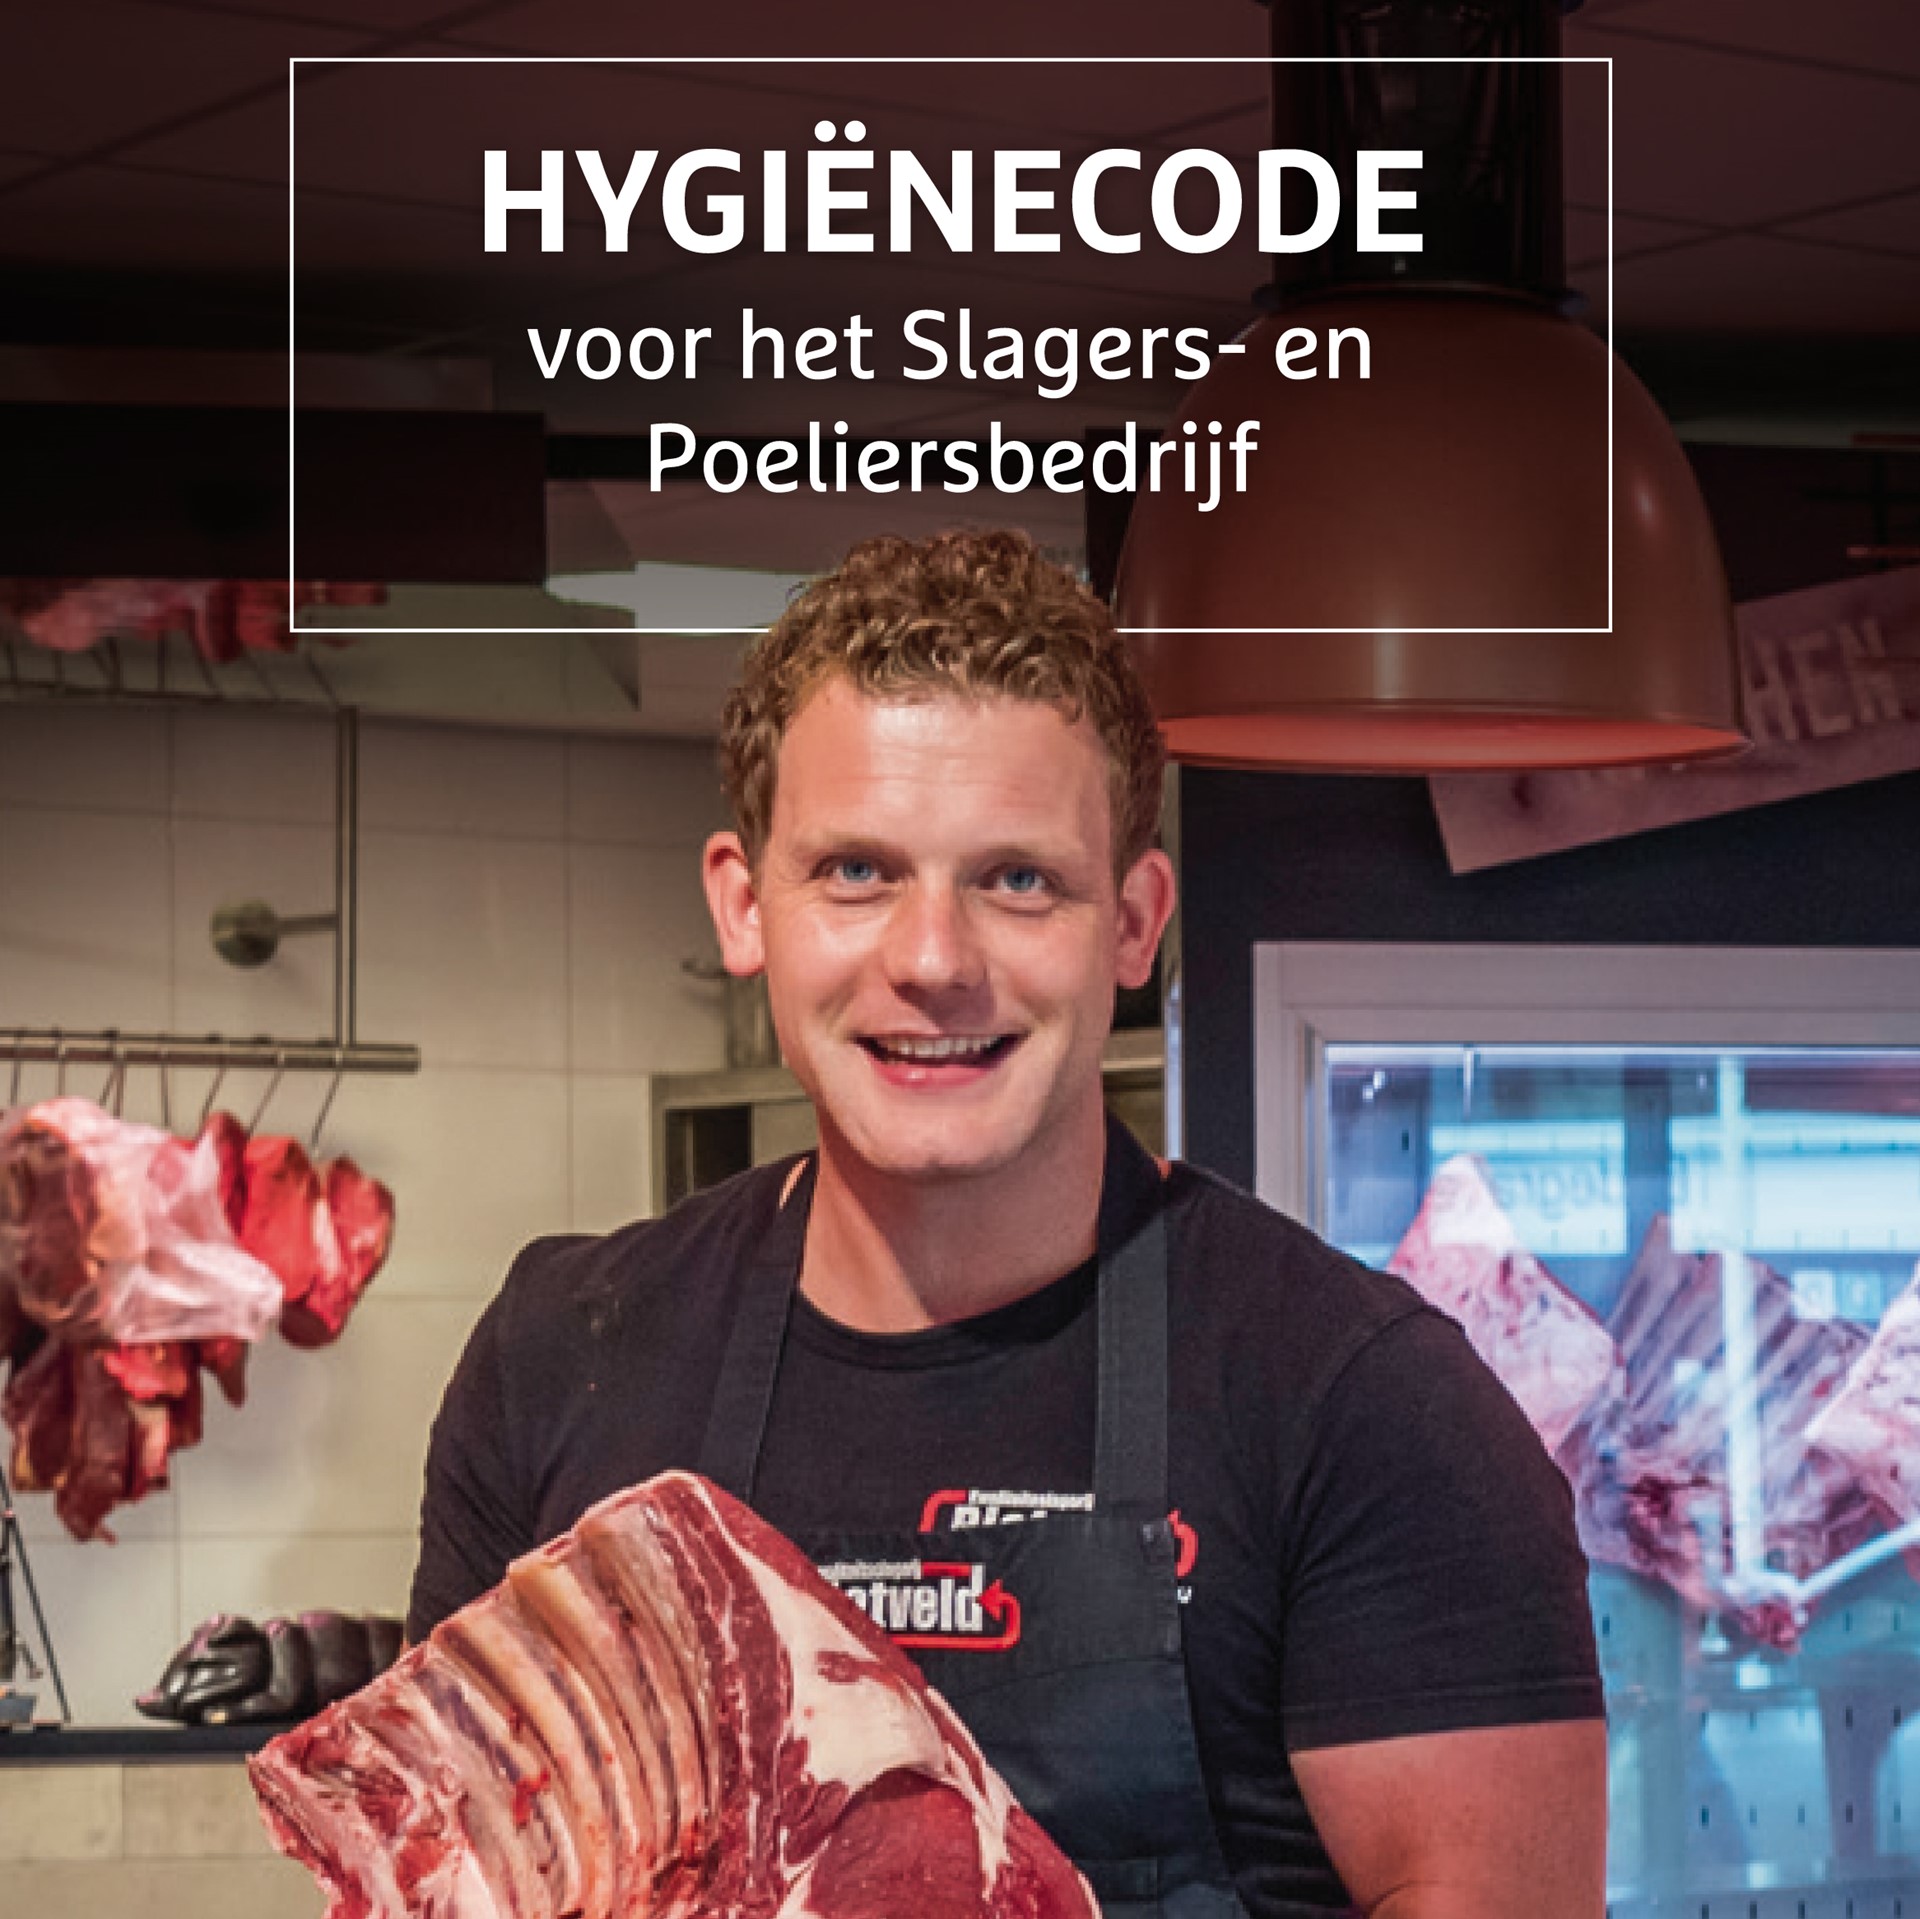 cover hygienecode voor slagers- en poeliersbedrijf 500x500